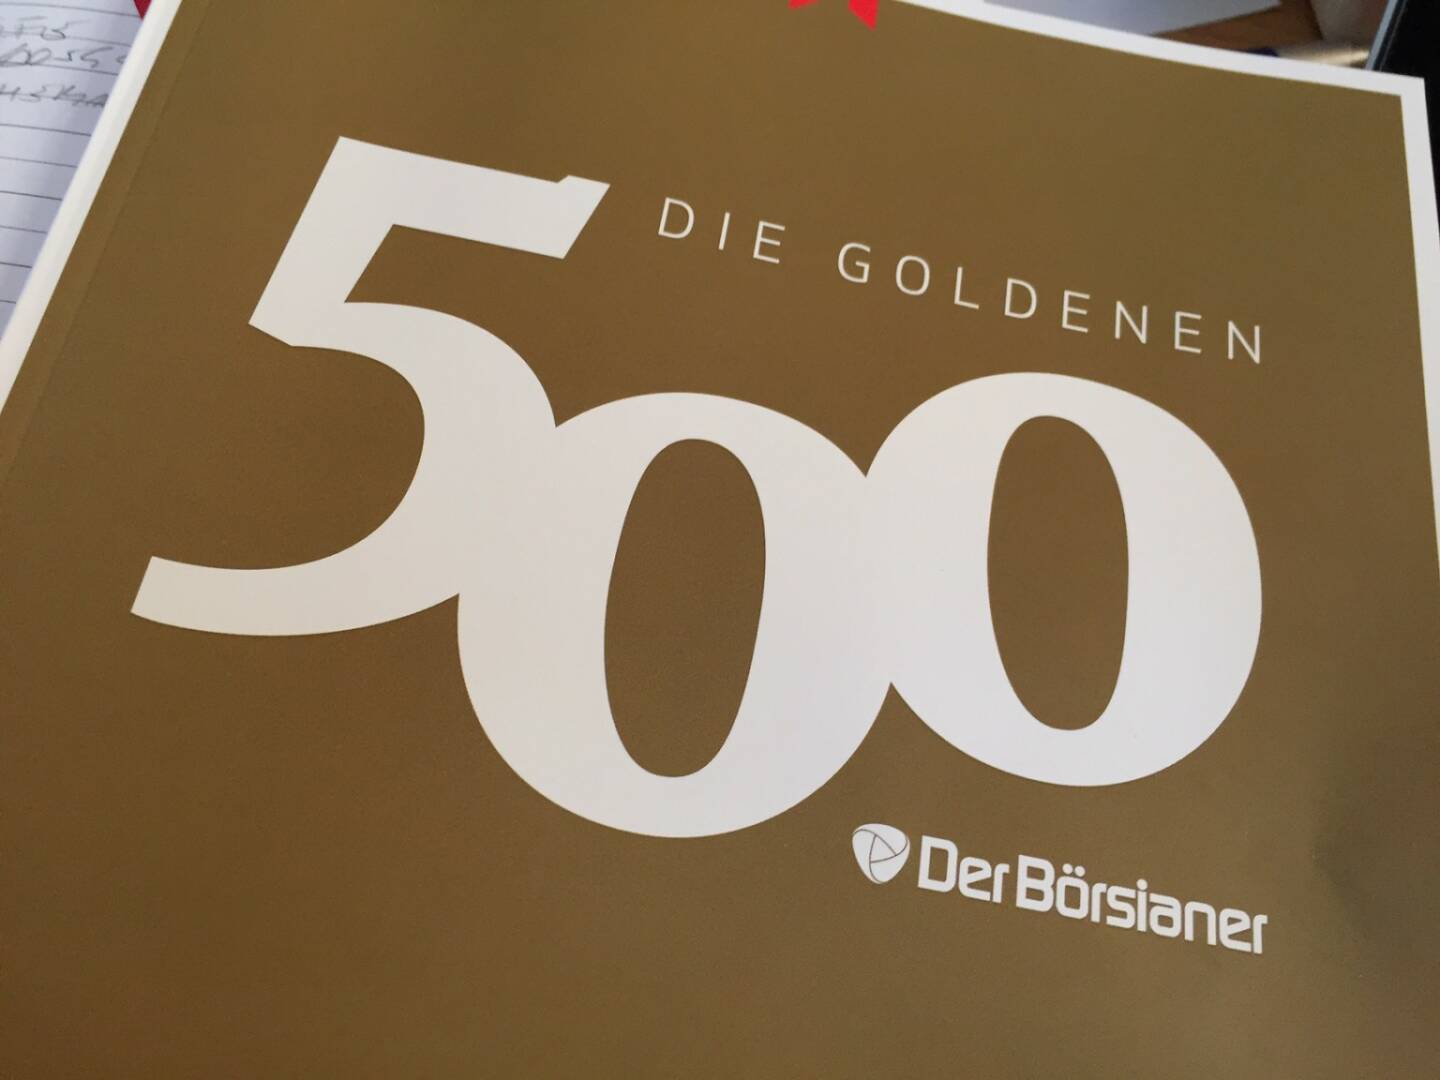 69. bei den Goldenen 500 Börsianern